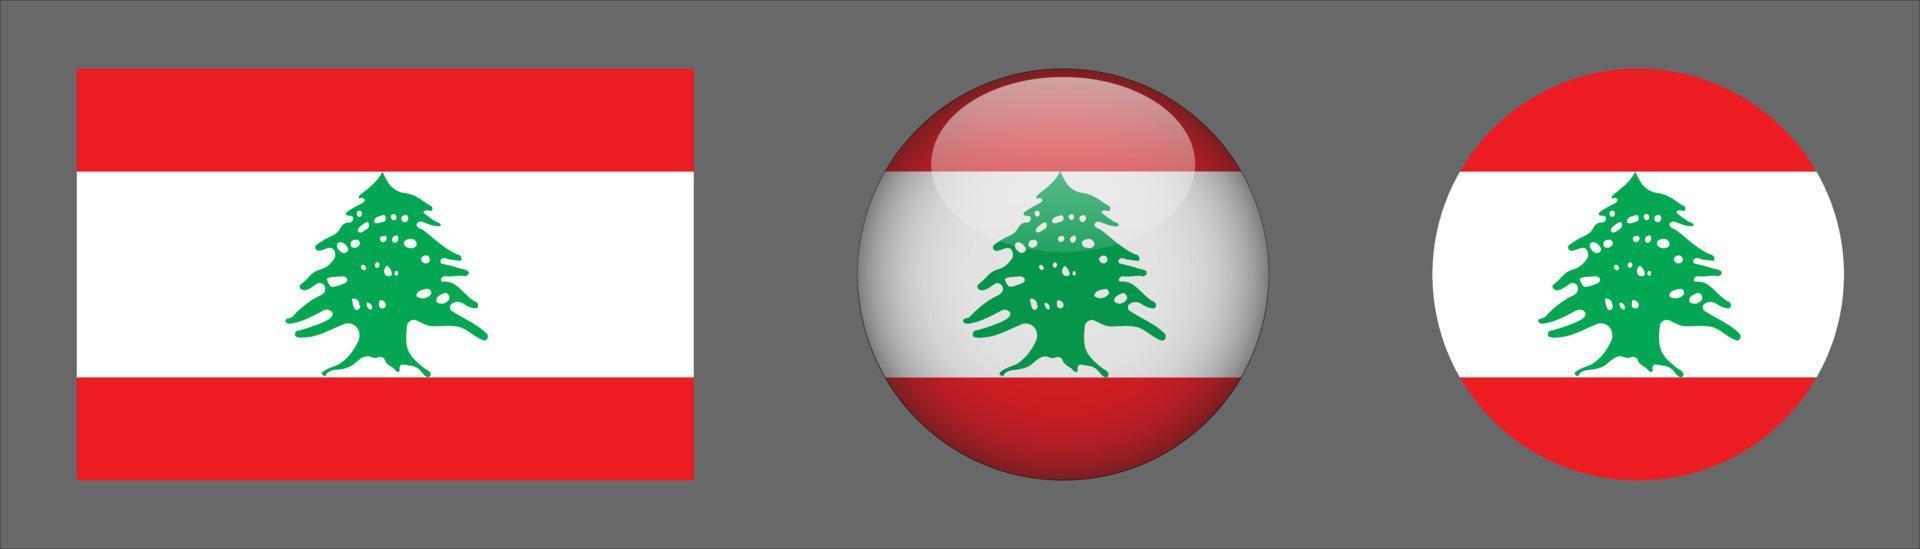 coleção de conjunto de bandeiras do Líbano, proporção de tamanho original, 3D arredondado e plano arredondado vetor